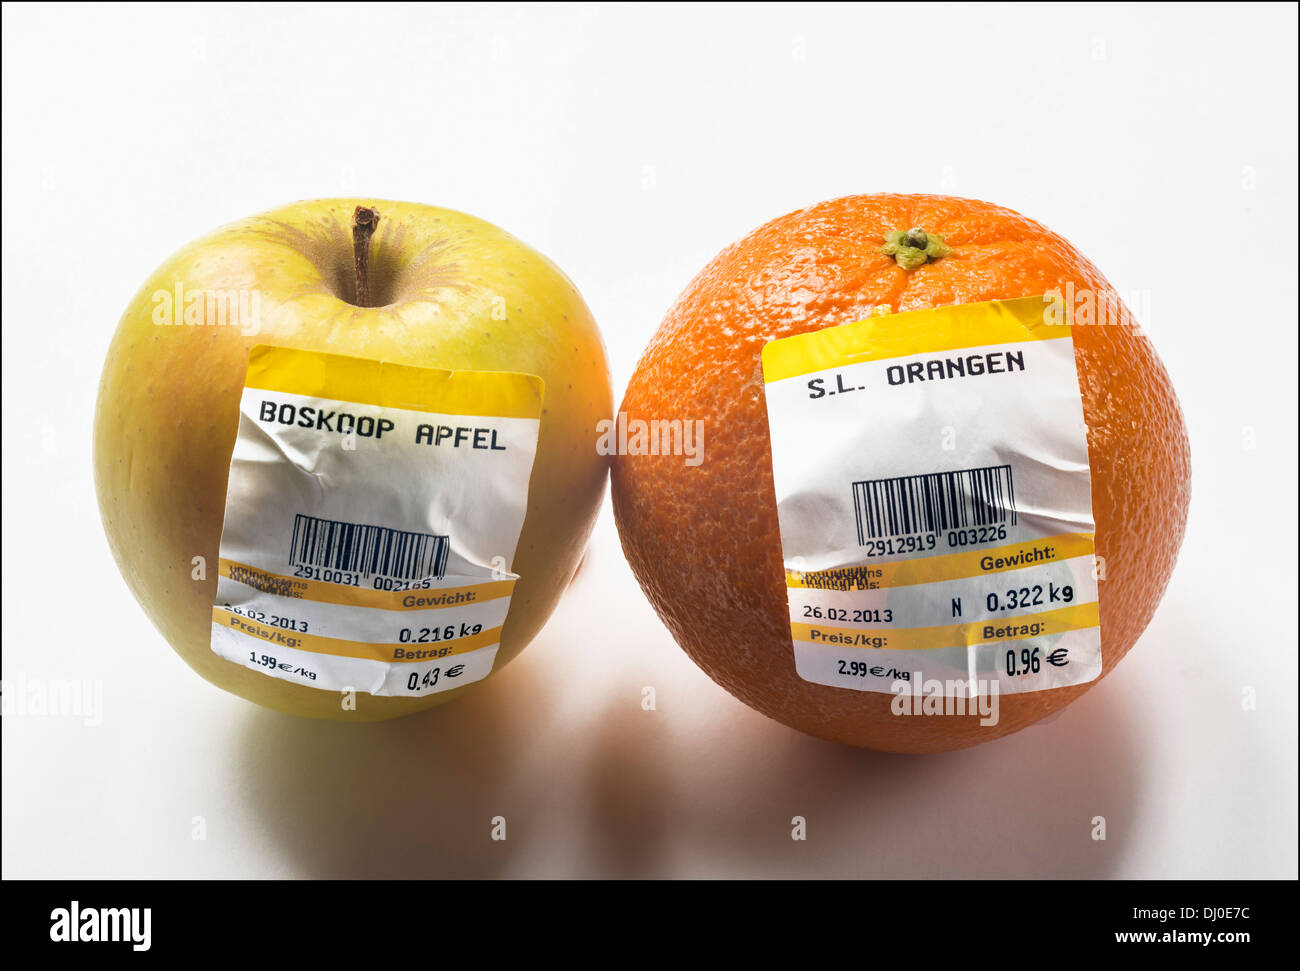 Belle de Boskoop Apfel und Orange mit deutschen Barcode-Etiketten, Gewicht  und Preis in Euro Stockfotografie - Alamy